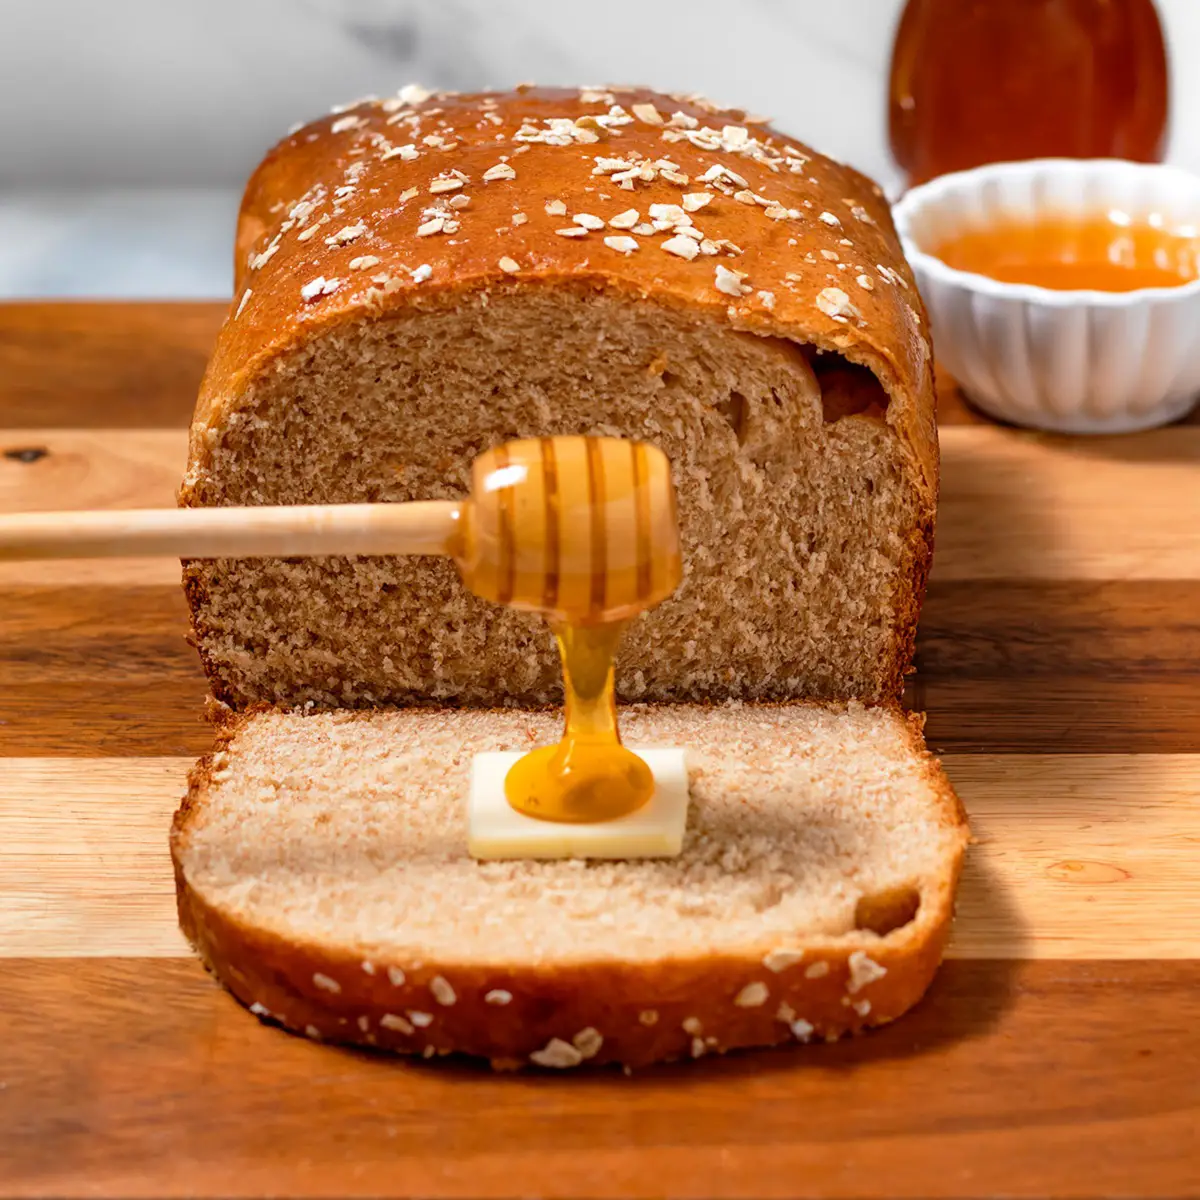 https://www.mealsbymolly.com/wp-content/uploads/Honey-wheat-bread-featured.jpg